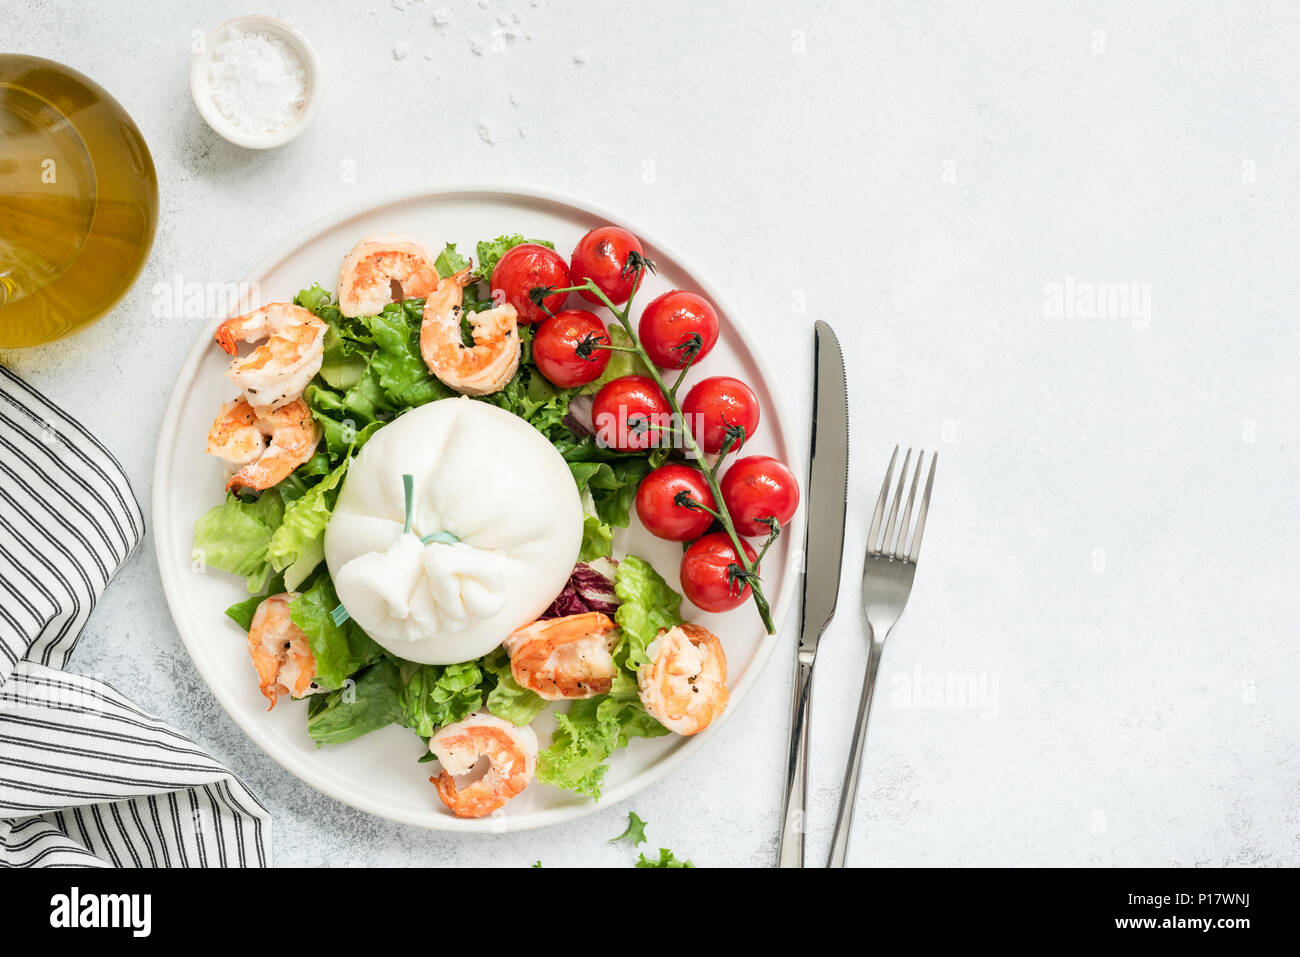 Una sana insalata con burrata, gamberi, pomodori e lattuga sulla piastra bianca. Vista superiore della gustosa insalata italiana con olio di oliva condimento. Mangiare sano concep Foto Stock